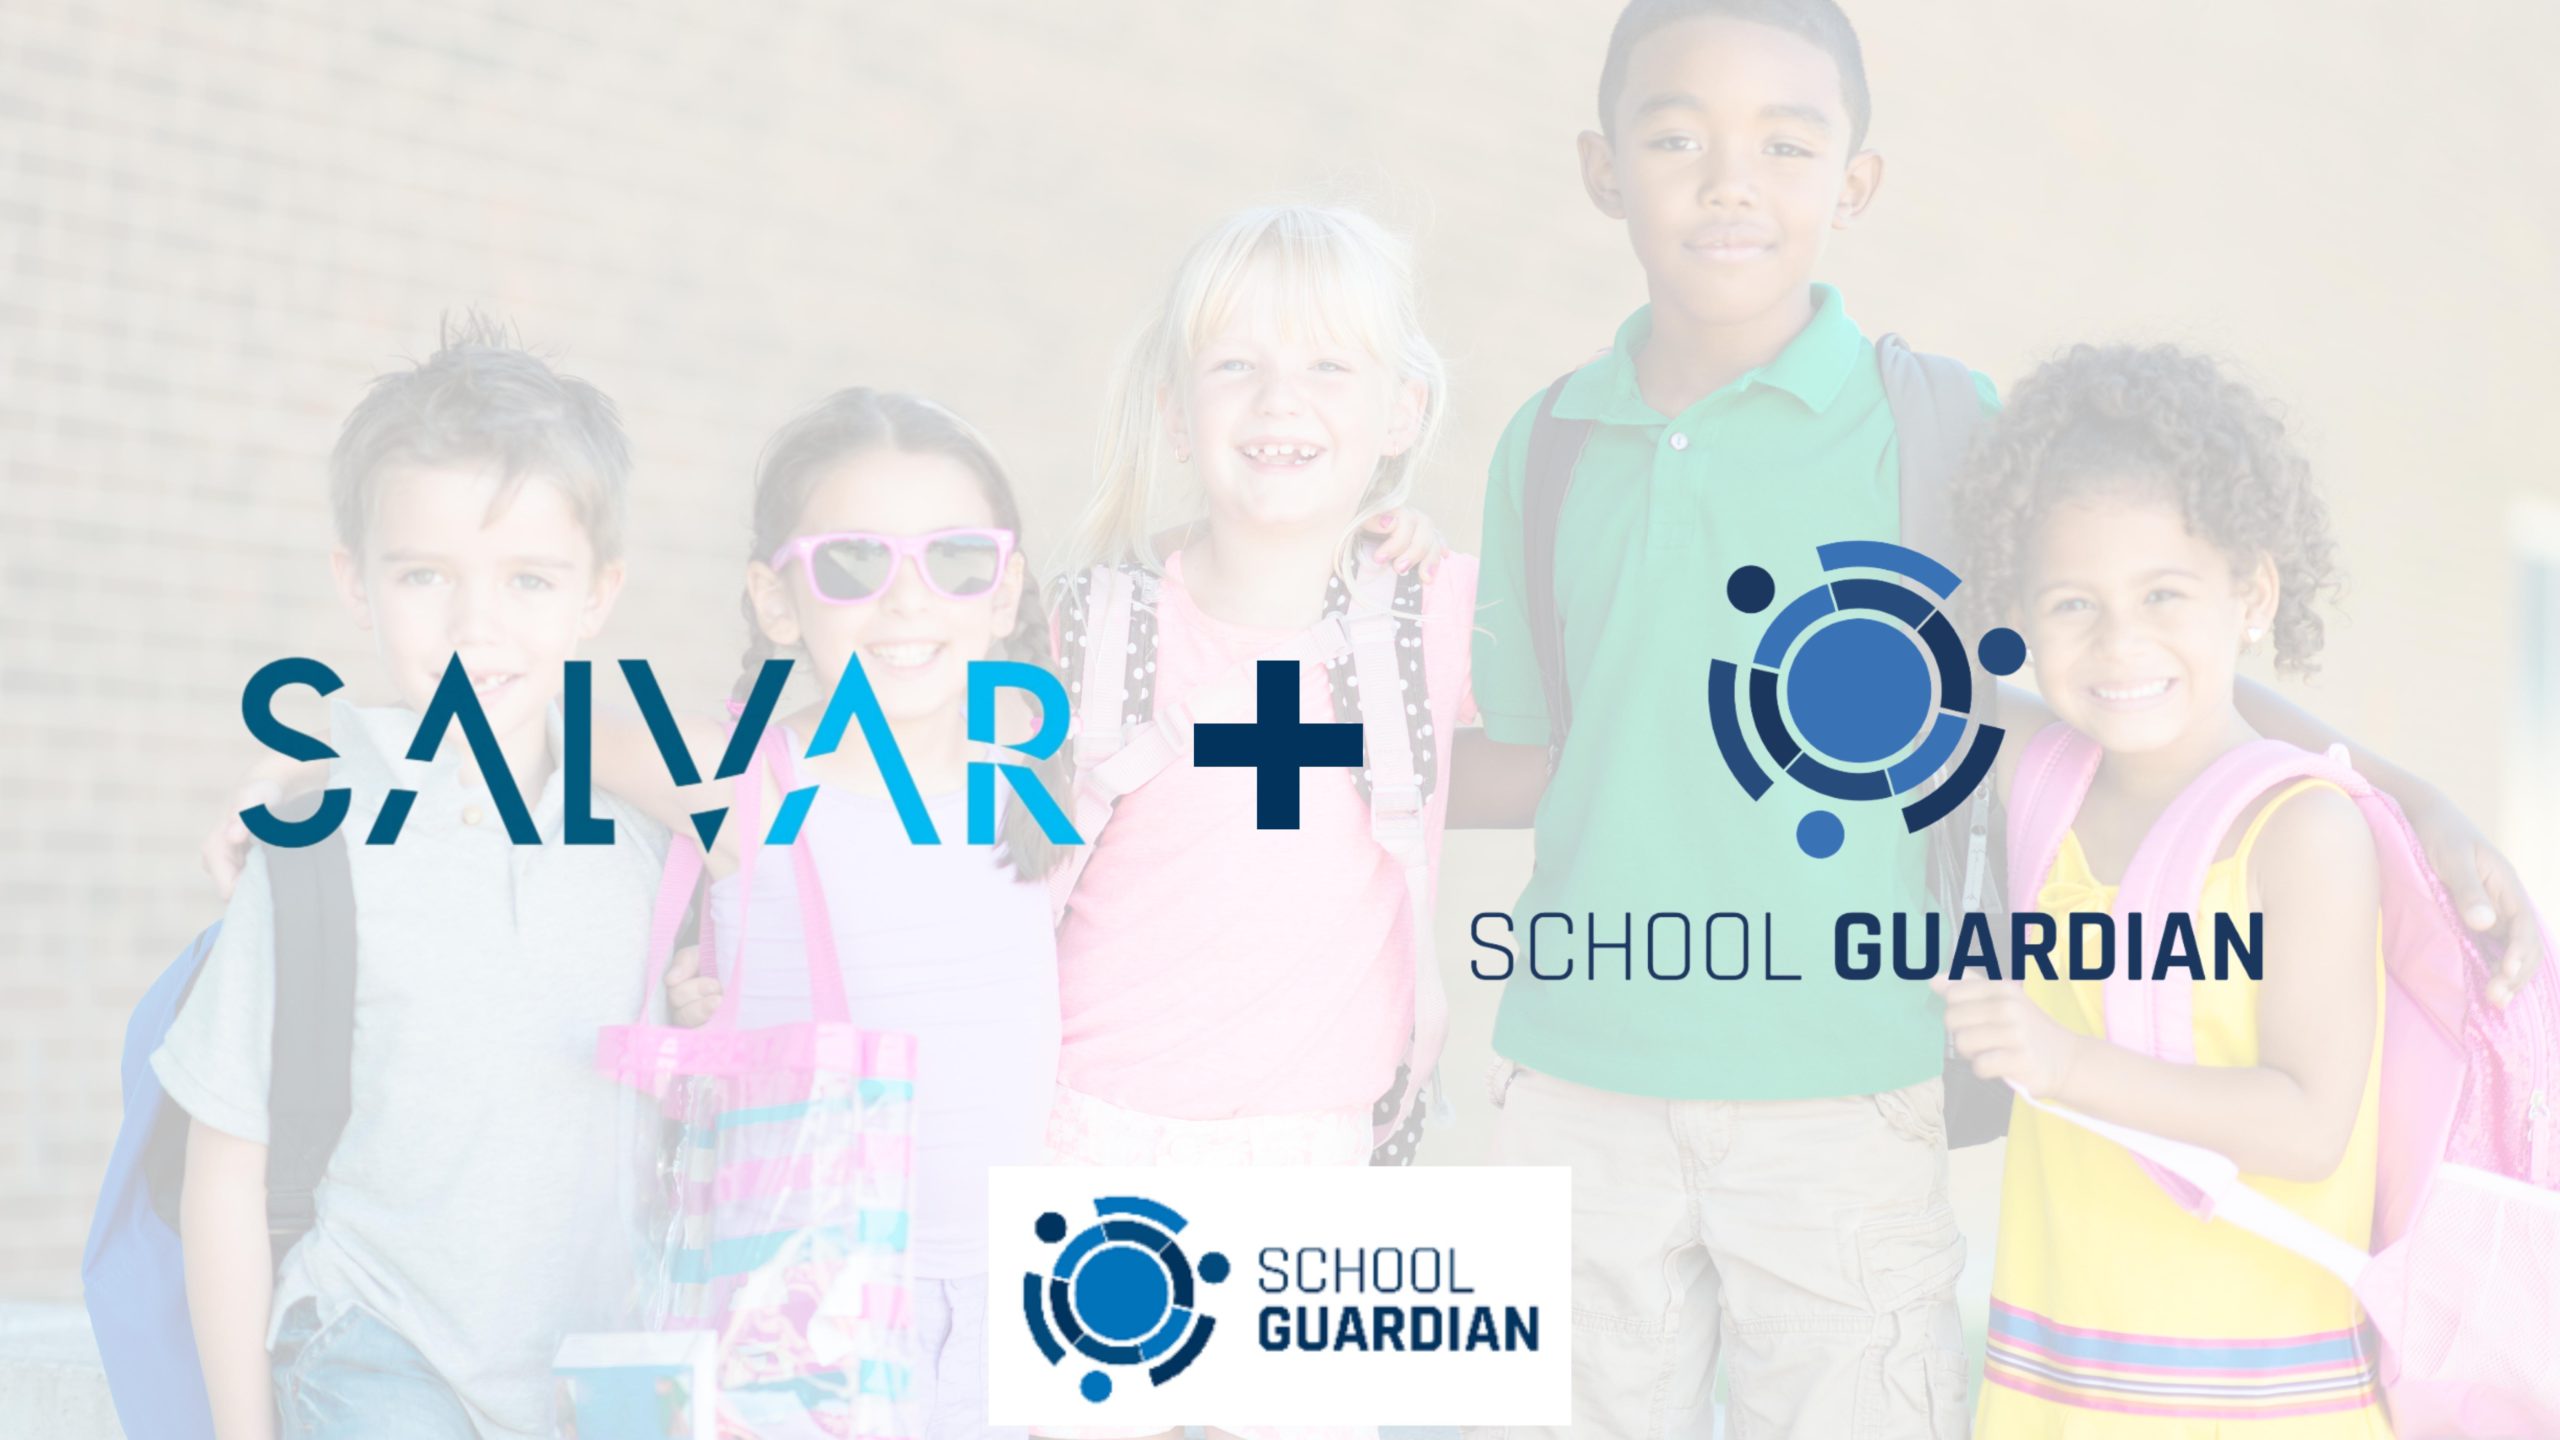 School Guardian firma parceria com a Salvar